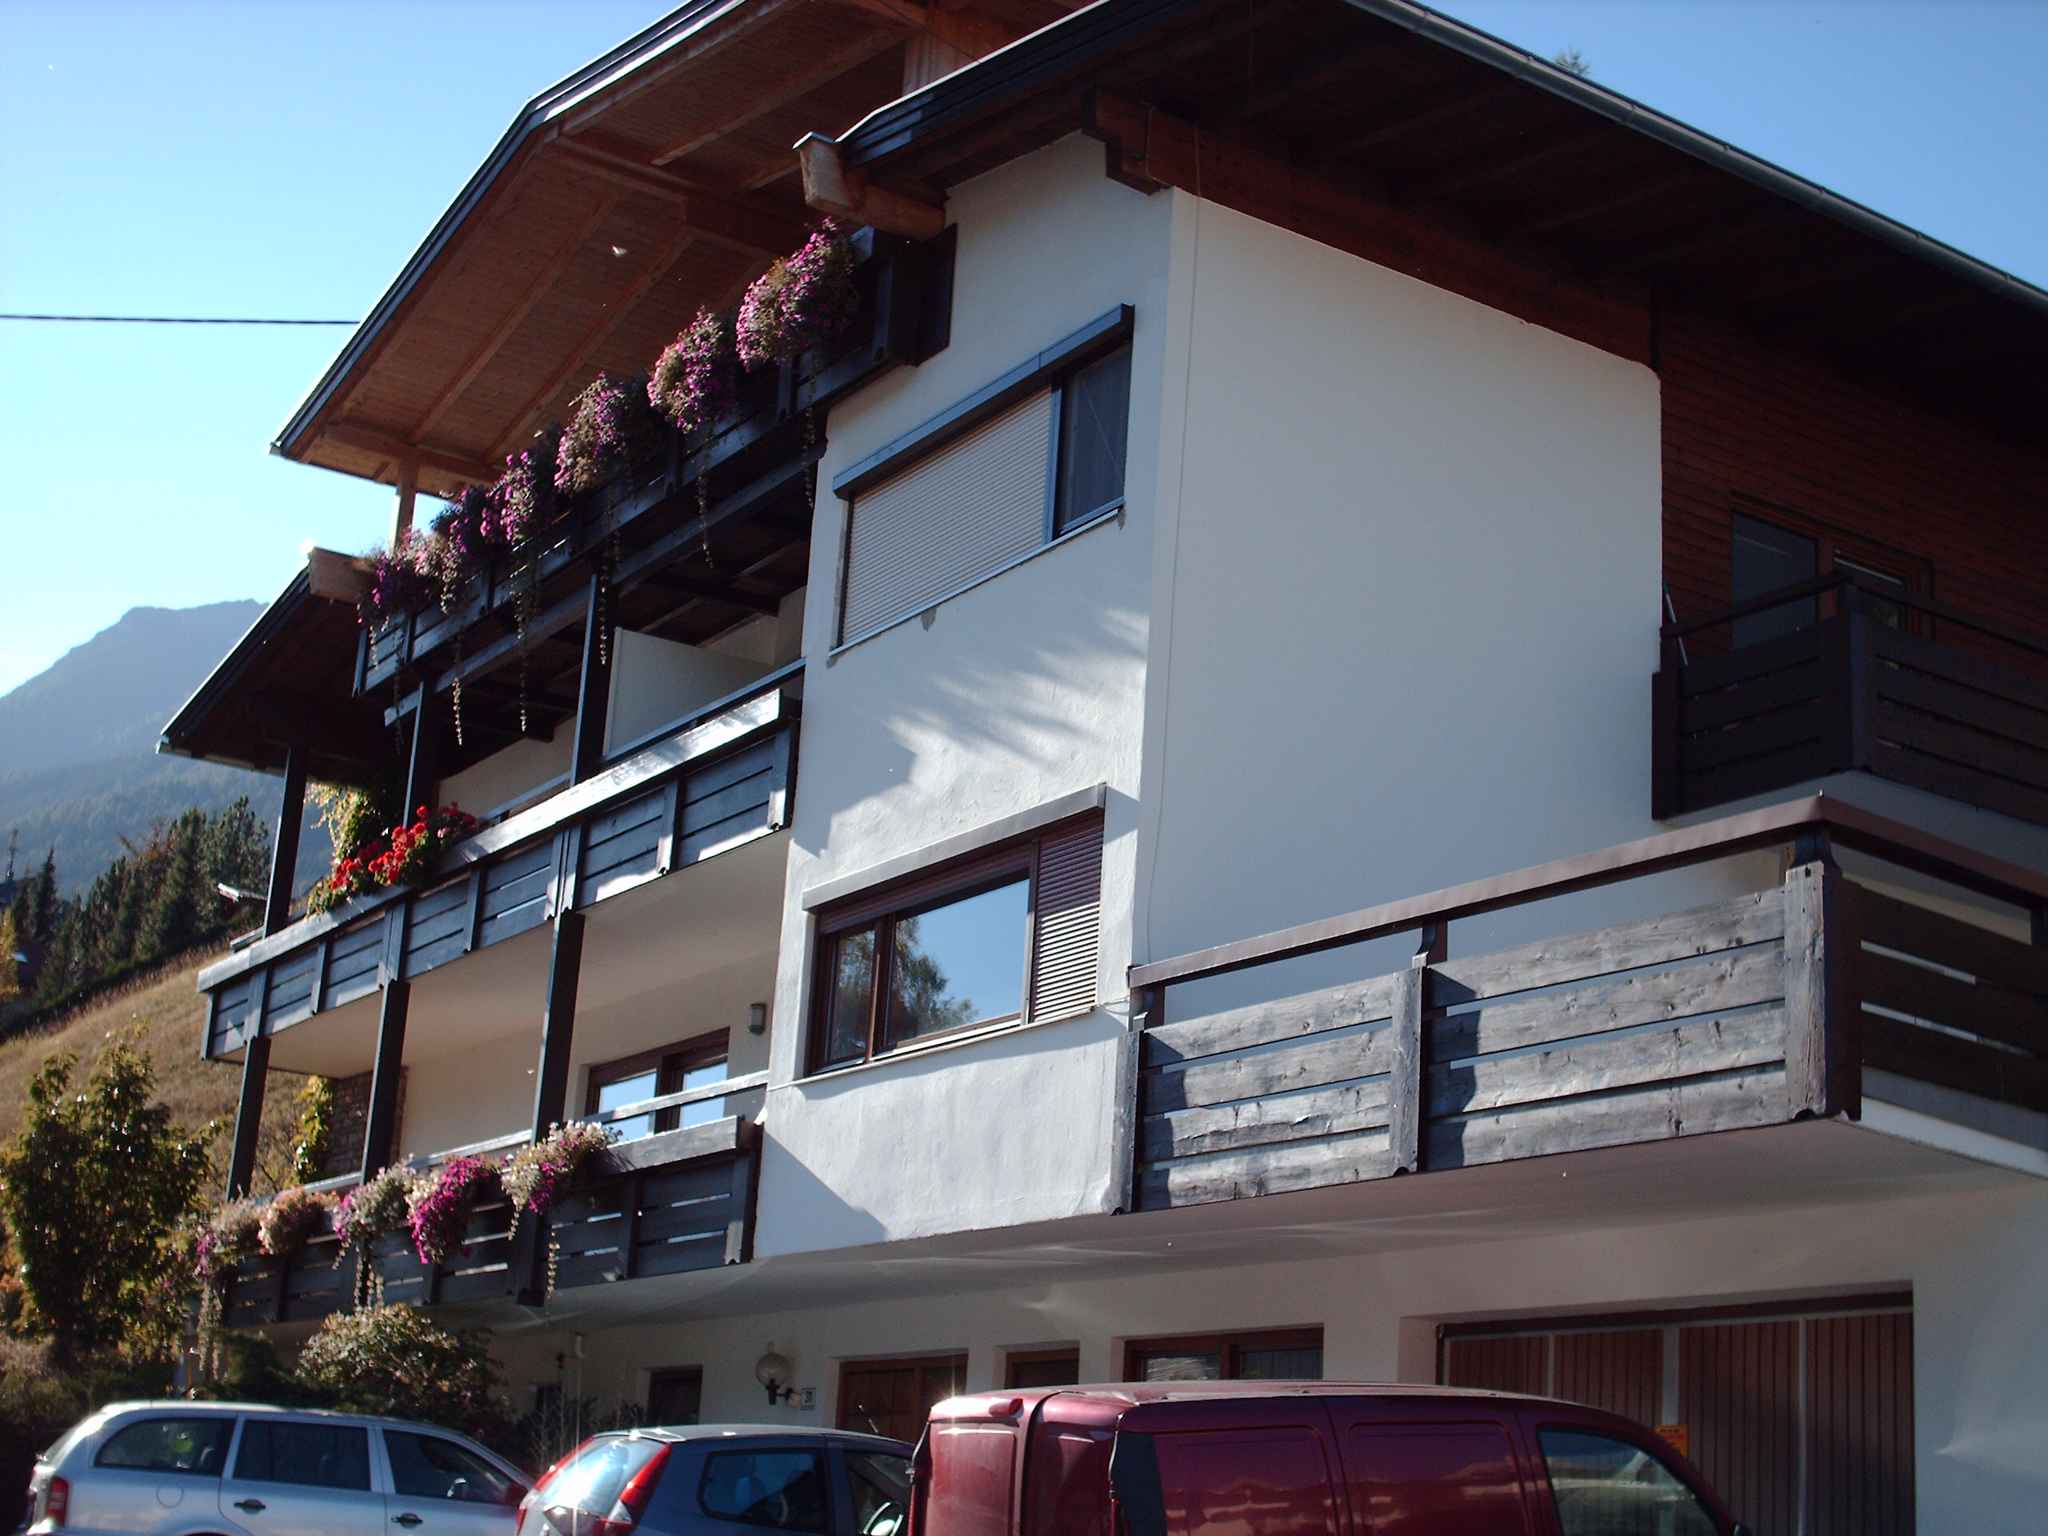 Ferienwohnung mit großer Terrasse im Stubaital (283752), Fulpmes, Stubaital, Tirol, Österreich, Bild 1